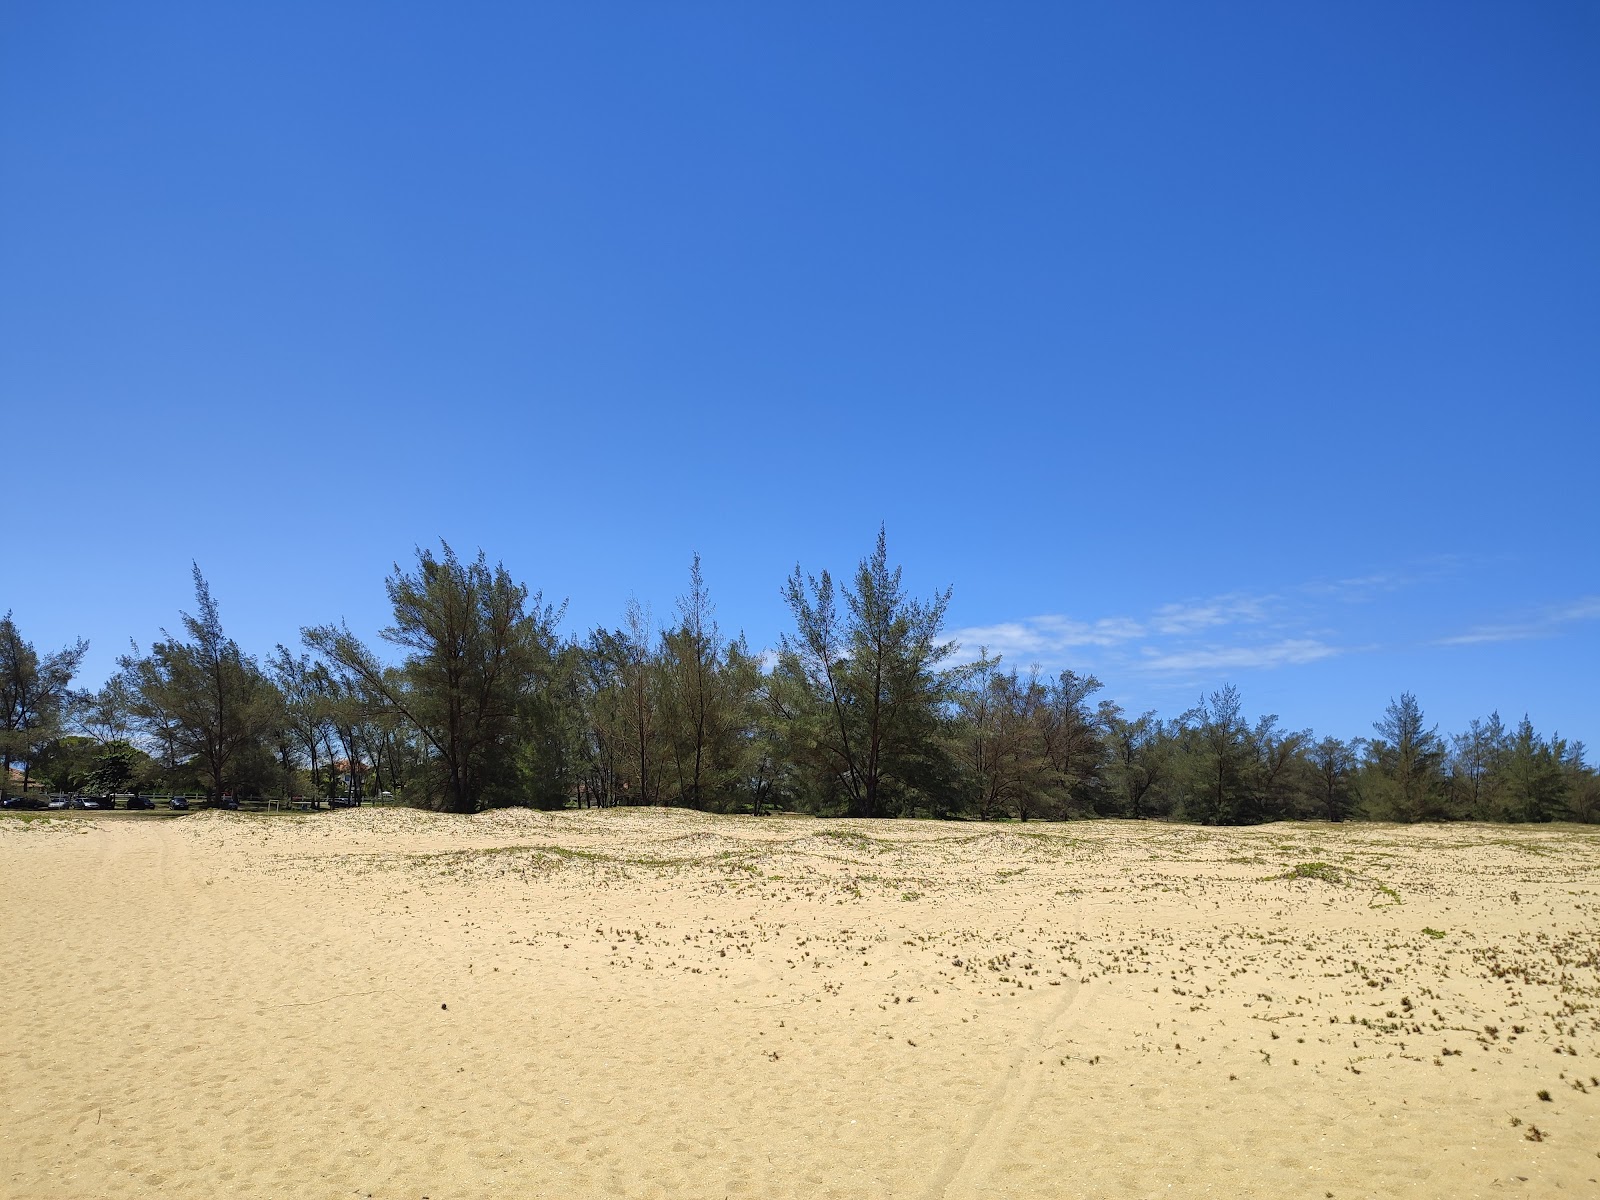 Zdjęcie Plaża Xexe z powierzchnią jasny piasek